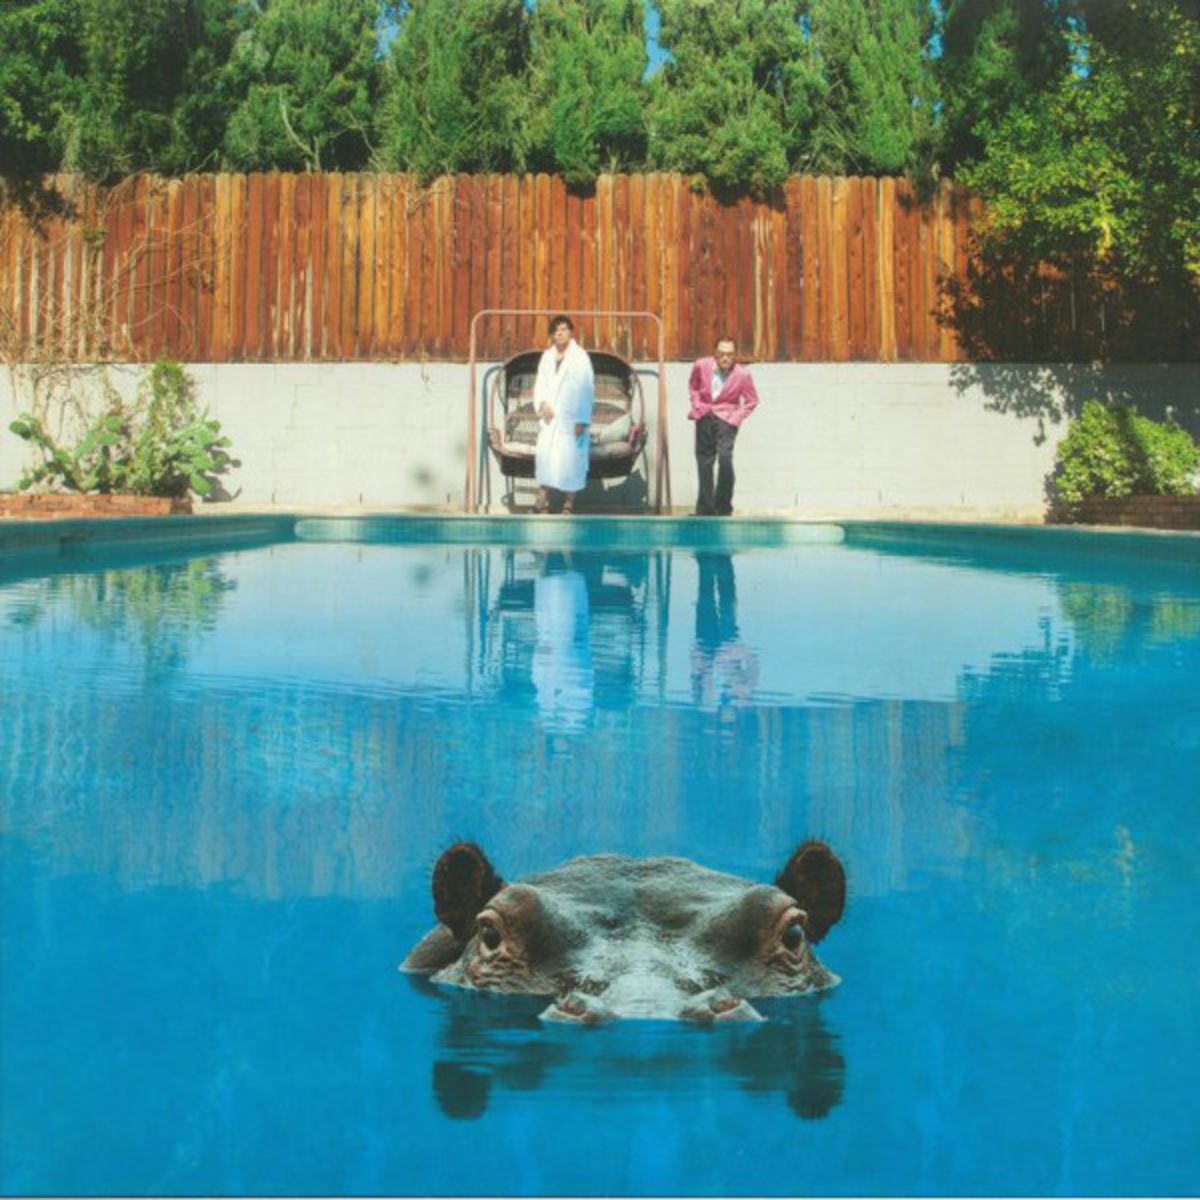 Hippopotamus music album cover